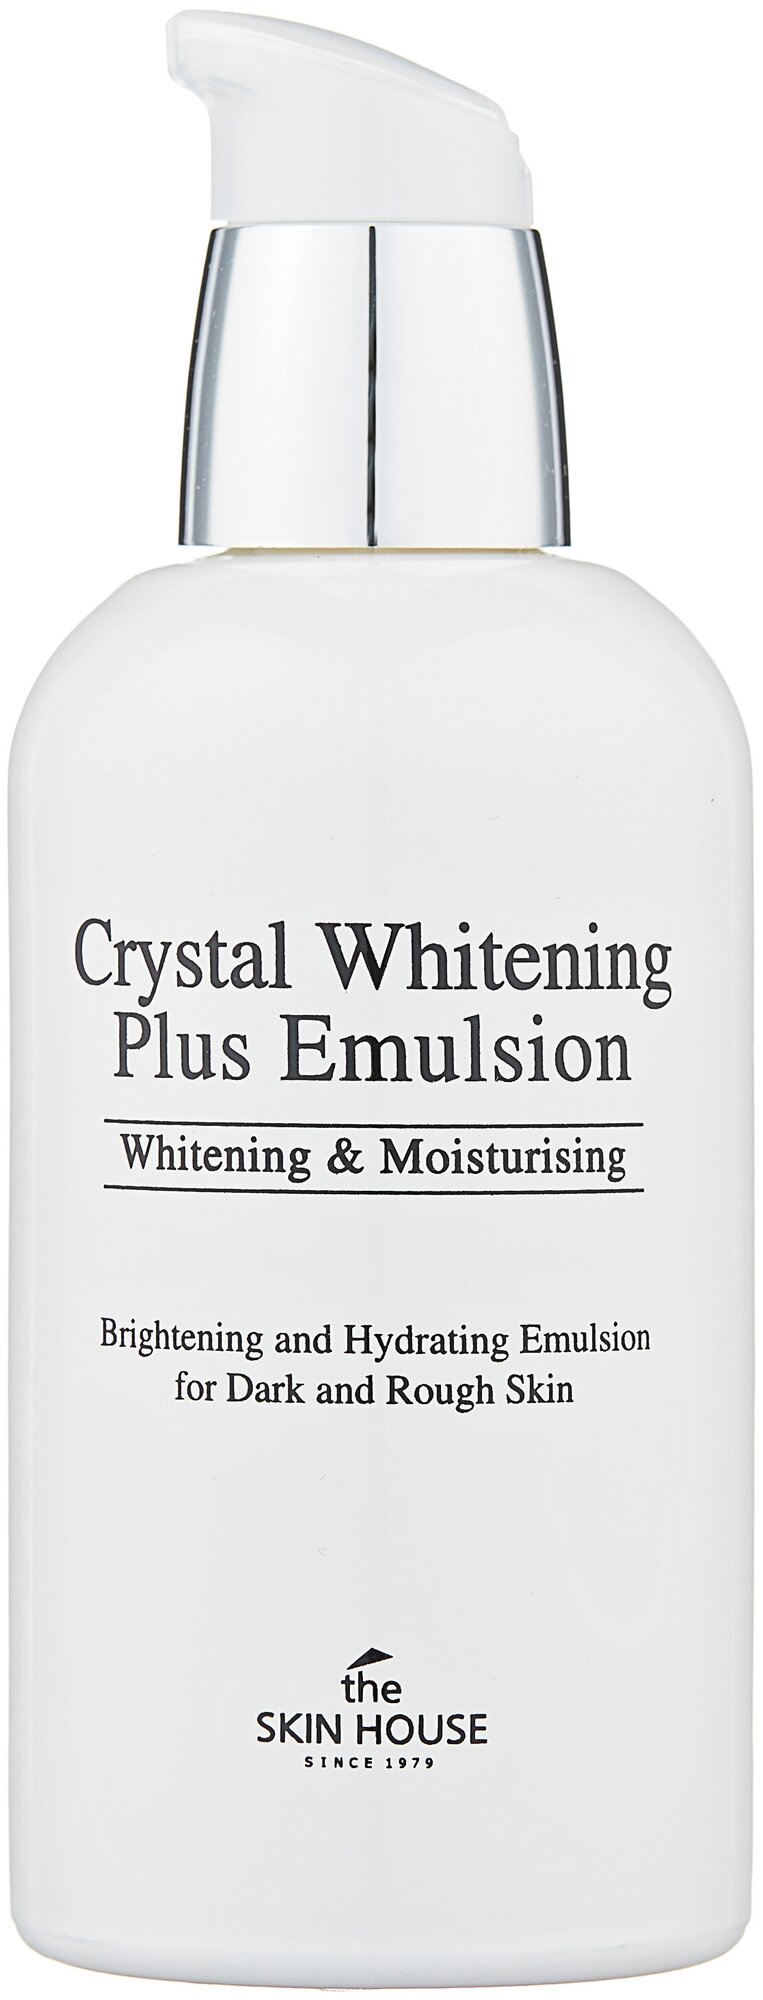 Эмульсия для выравнивания тона лица The Skin House Crystal Whitening Plus Emulsion, 130мл - фото №1